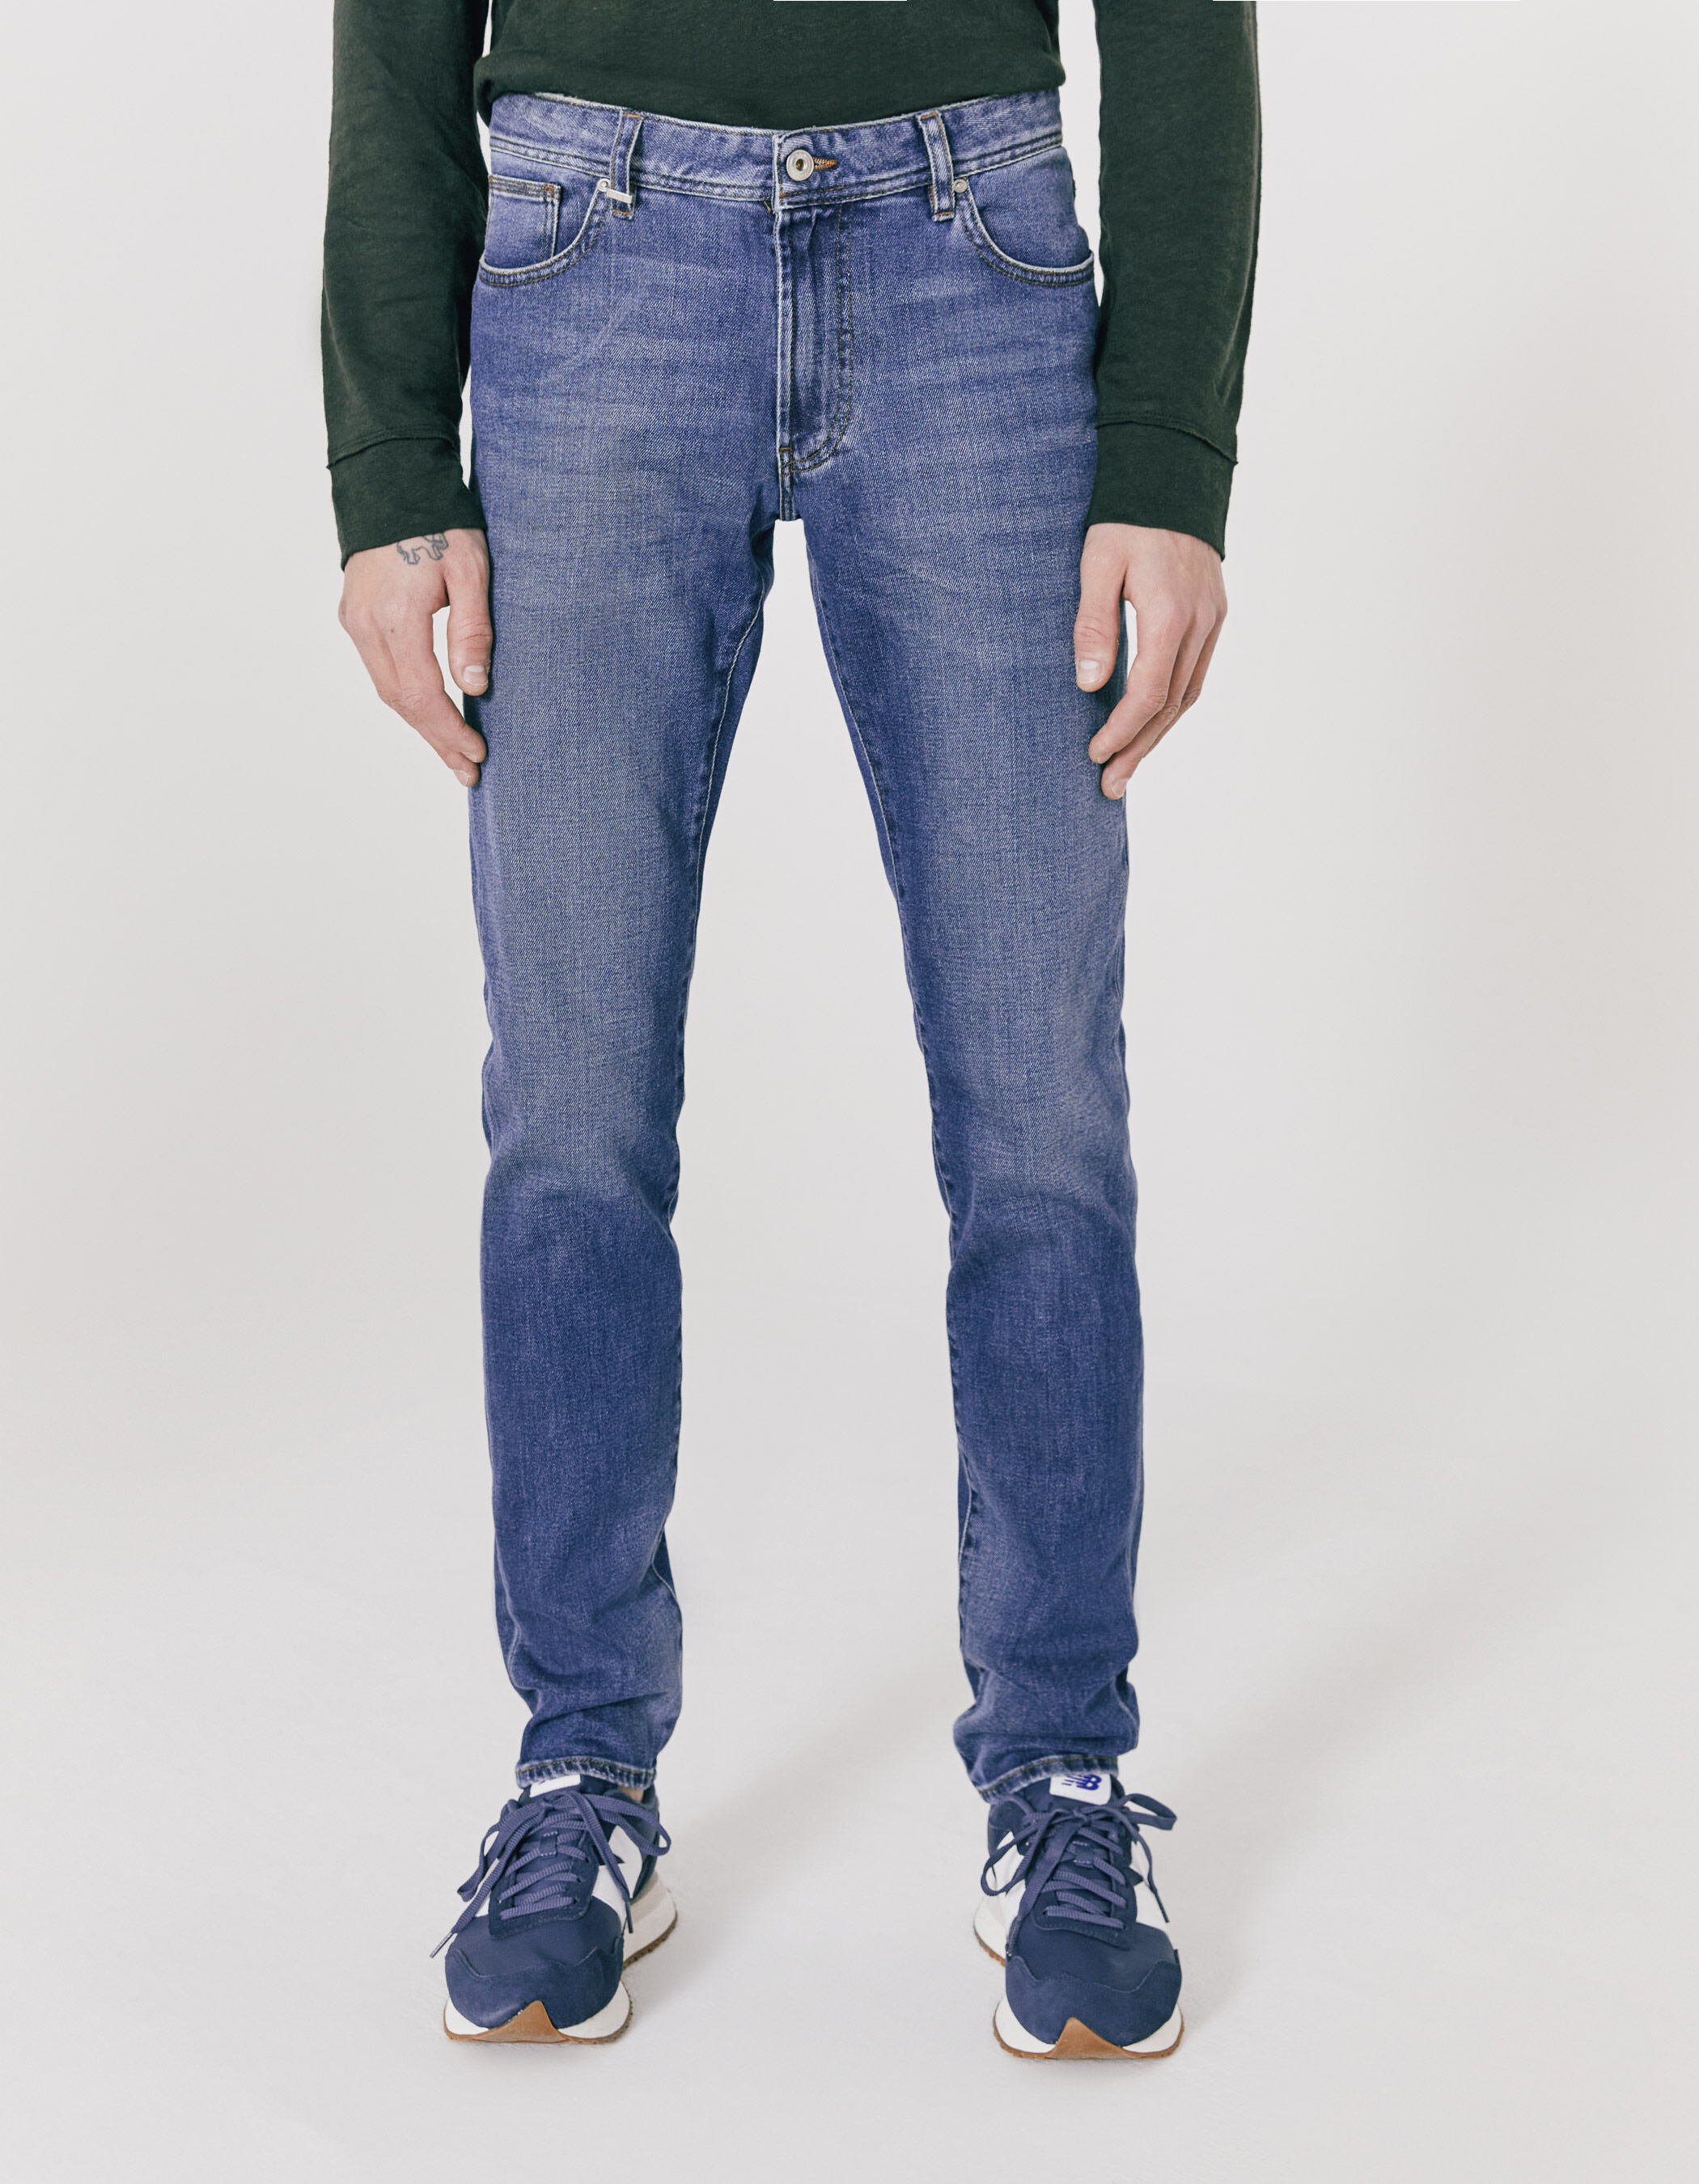 GANT Denim Andere materialien jeans in Grau für Herren Herren Bekleidung Jeans 